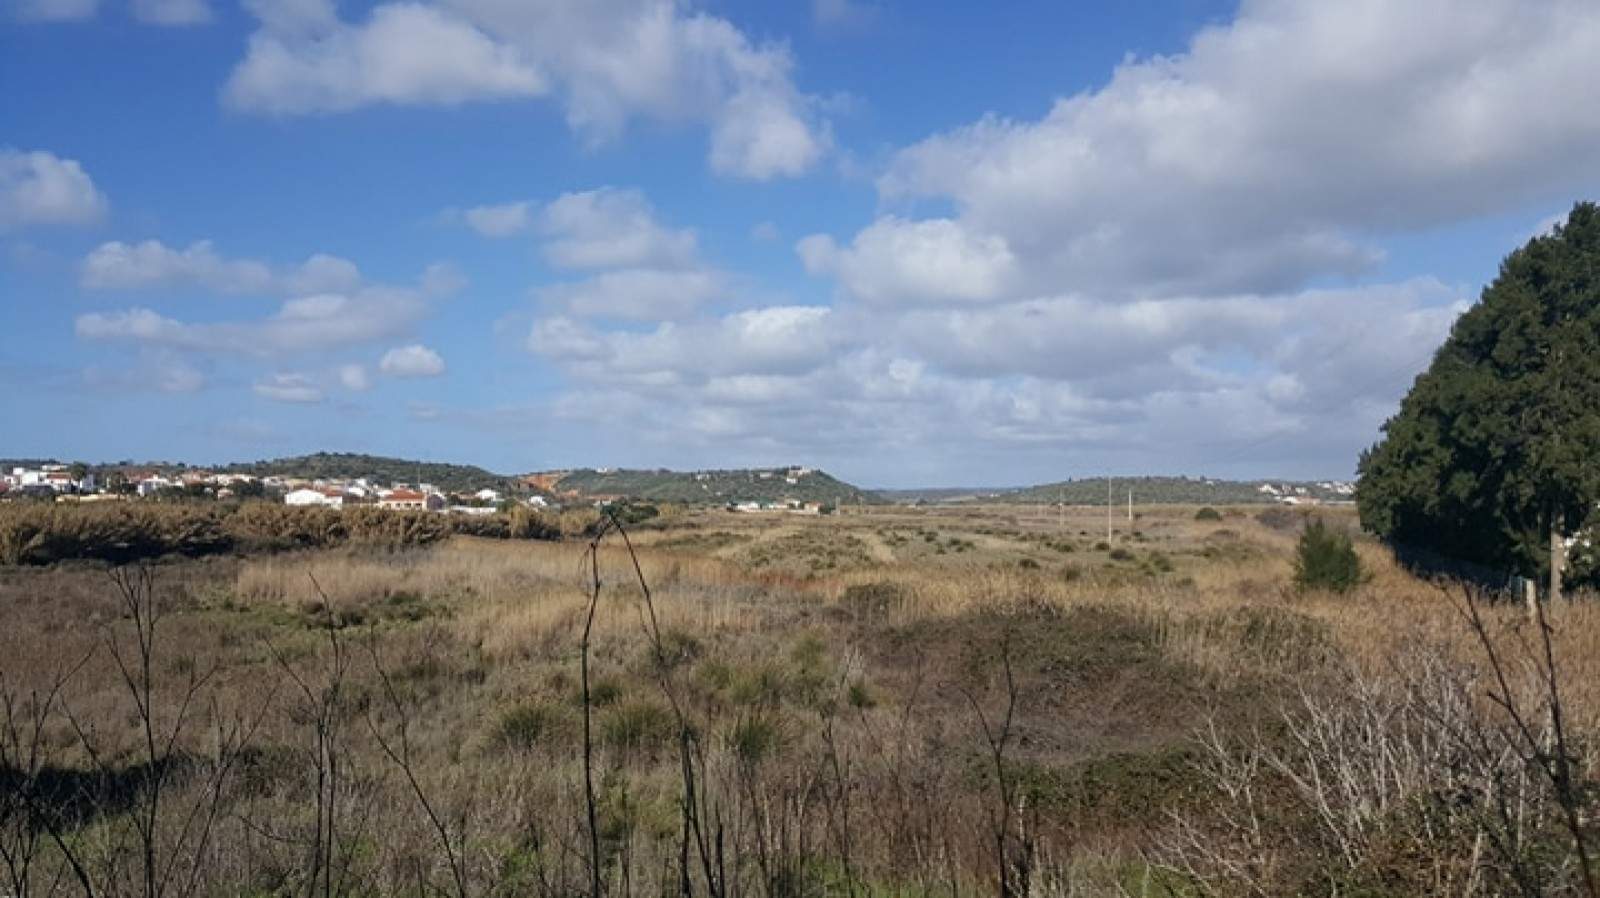 Land zum Verkauf, in der Nähe von Stränden und Golfplätzen, Lagos, Algarve, Portugal_72784